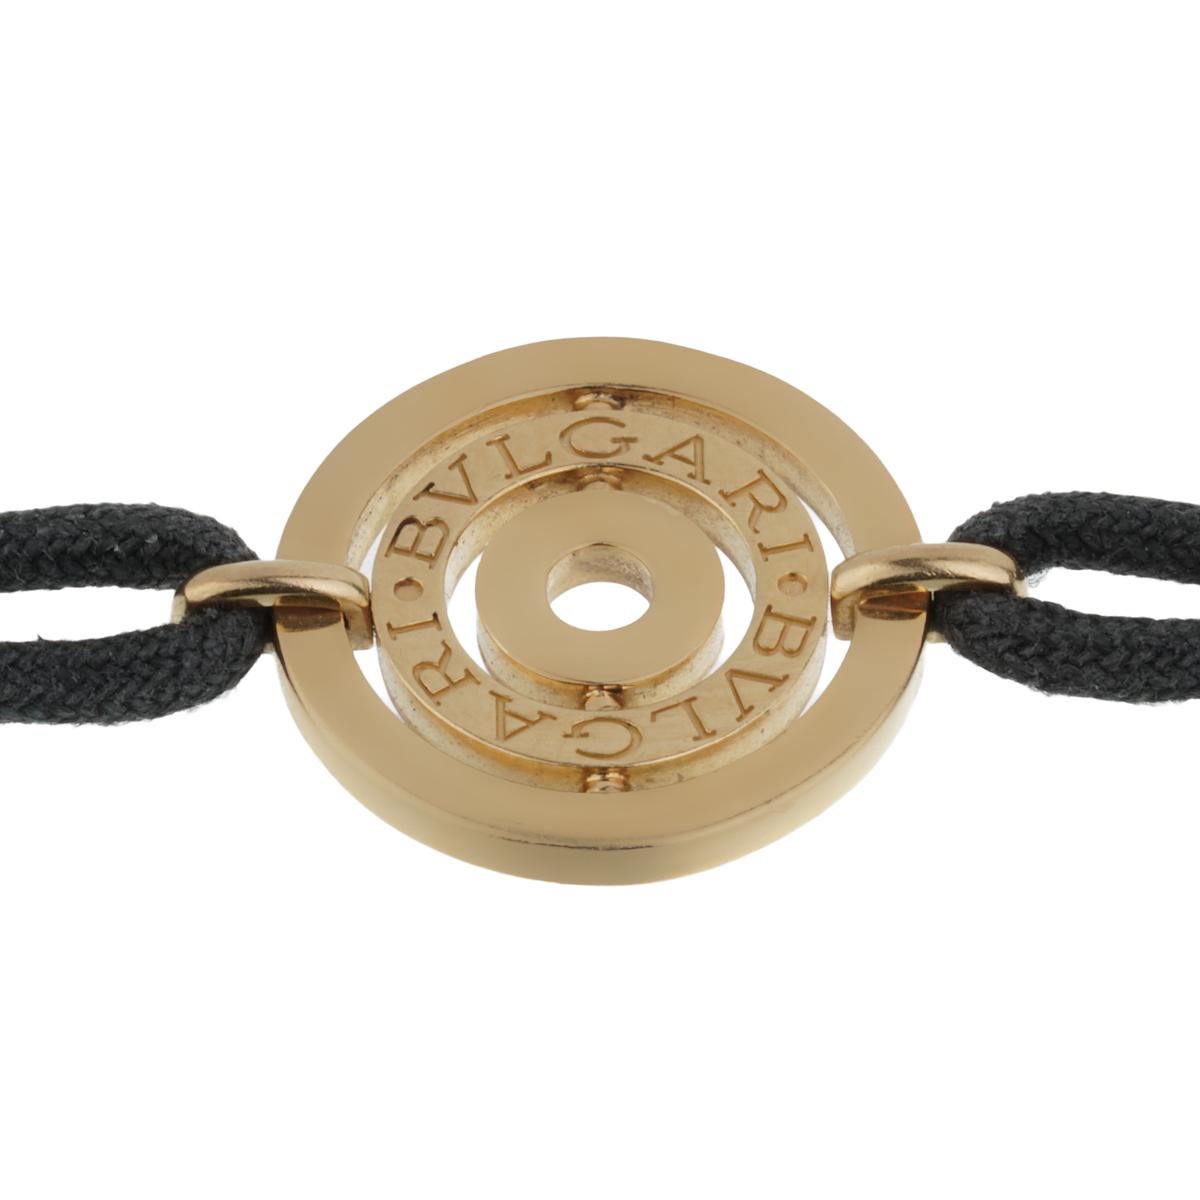 Un bracelet Astral Cerci vintage de Bulgari mettant en valeur le motif iconique de Bulgari Bulgari sur un cordon de coton noir. Le bracelet mesure 6